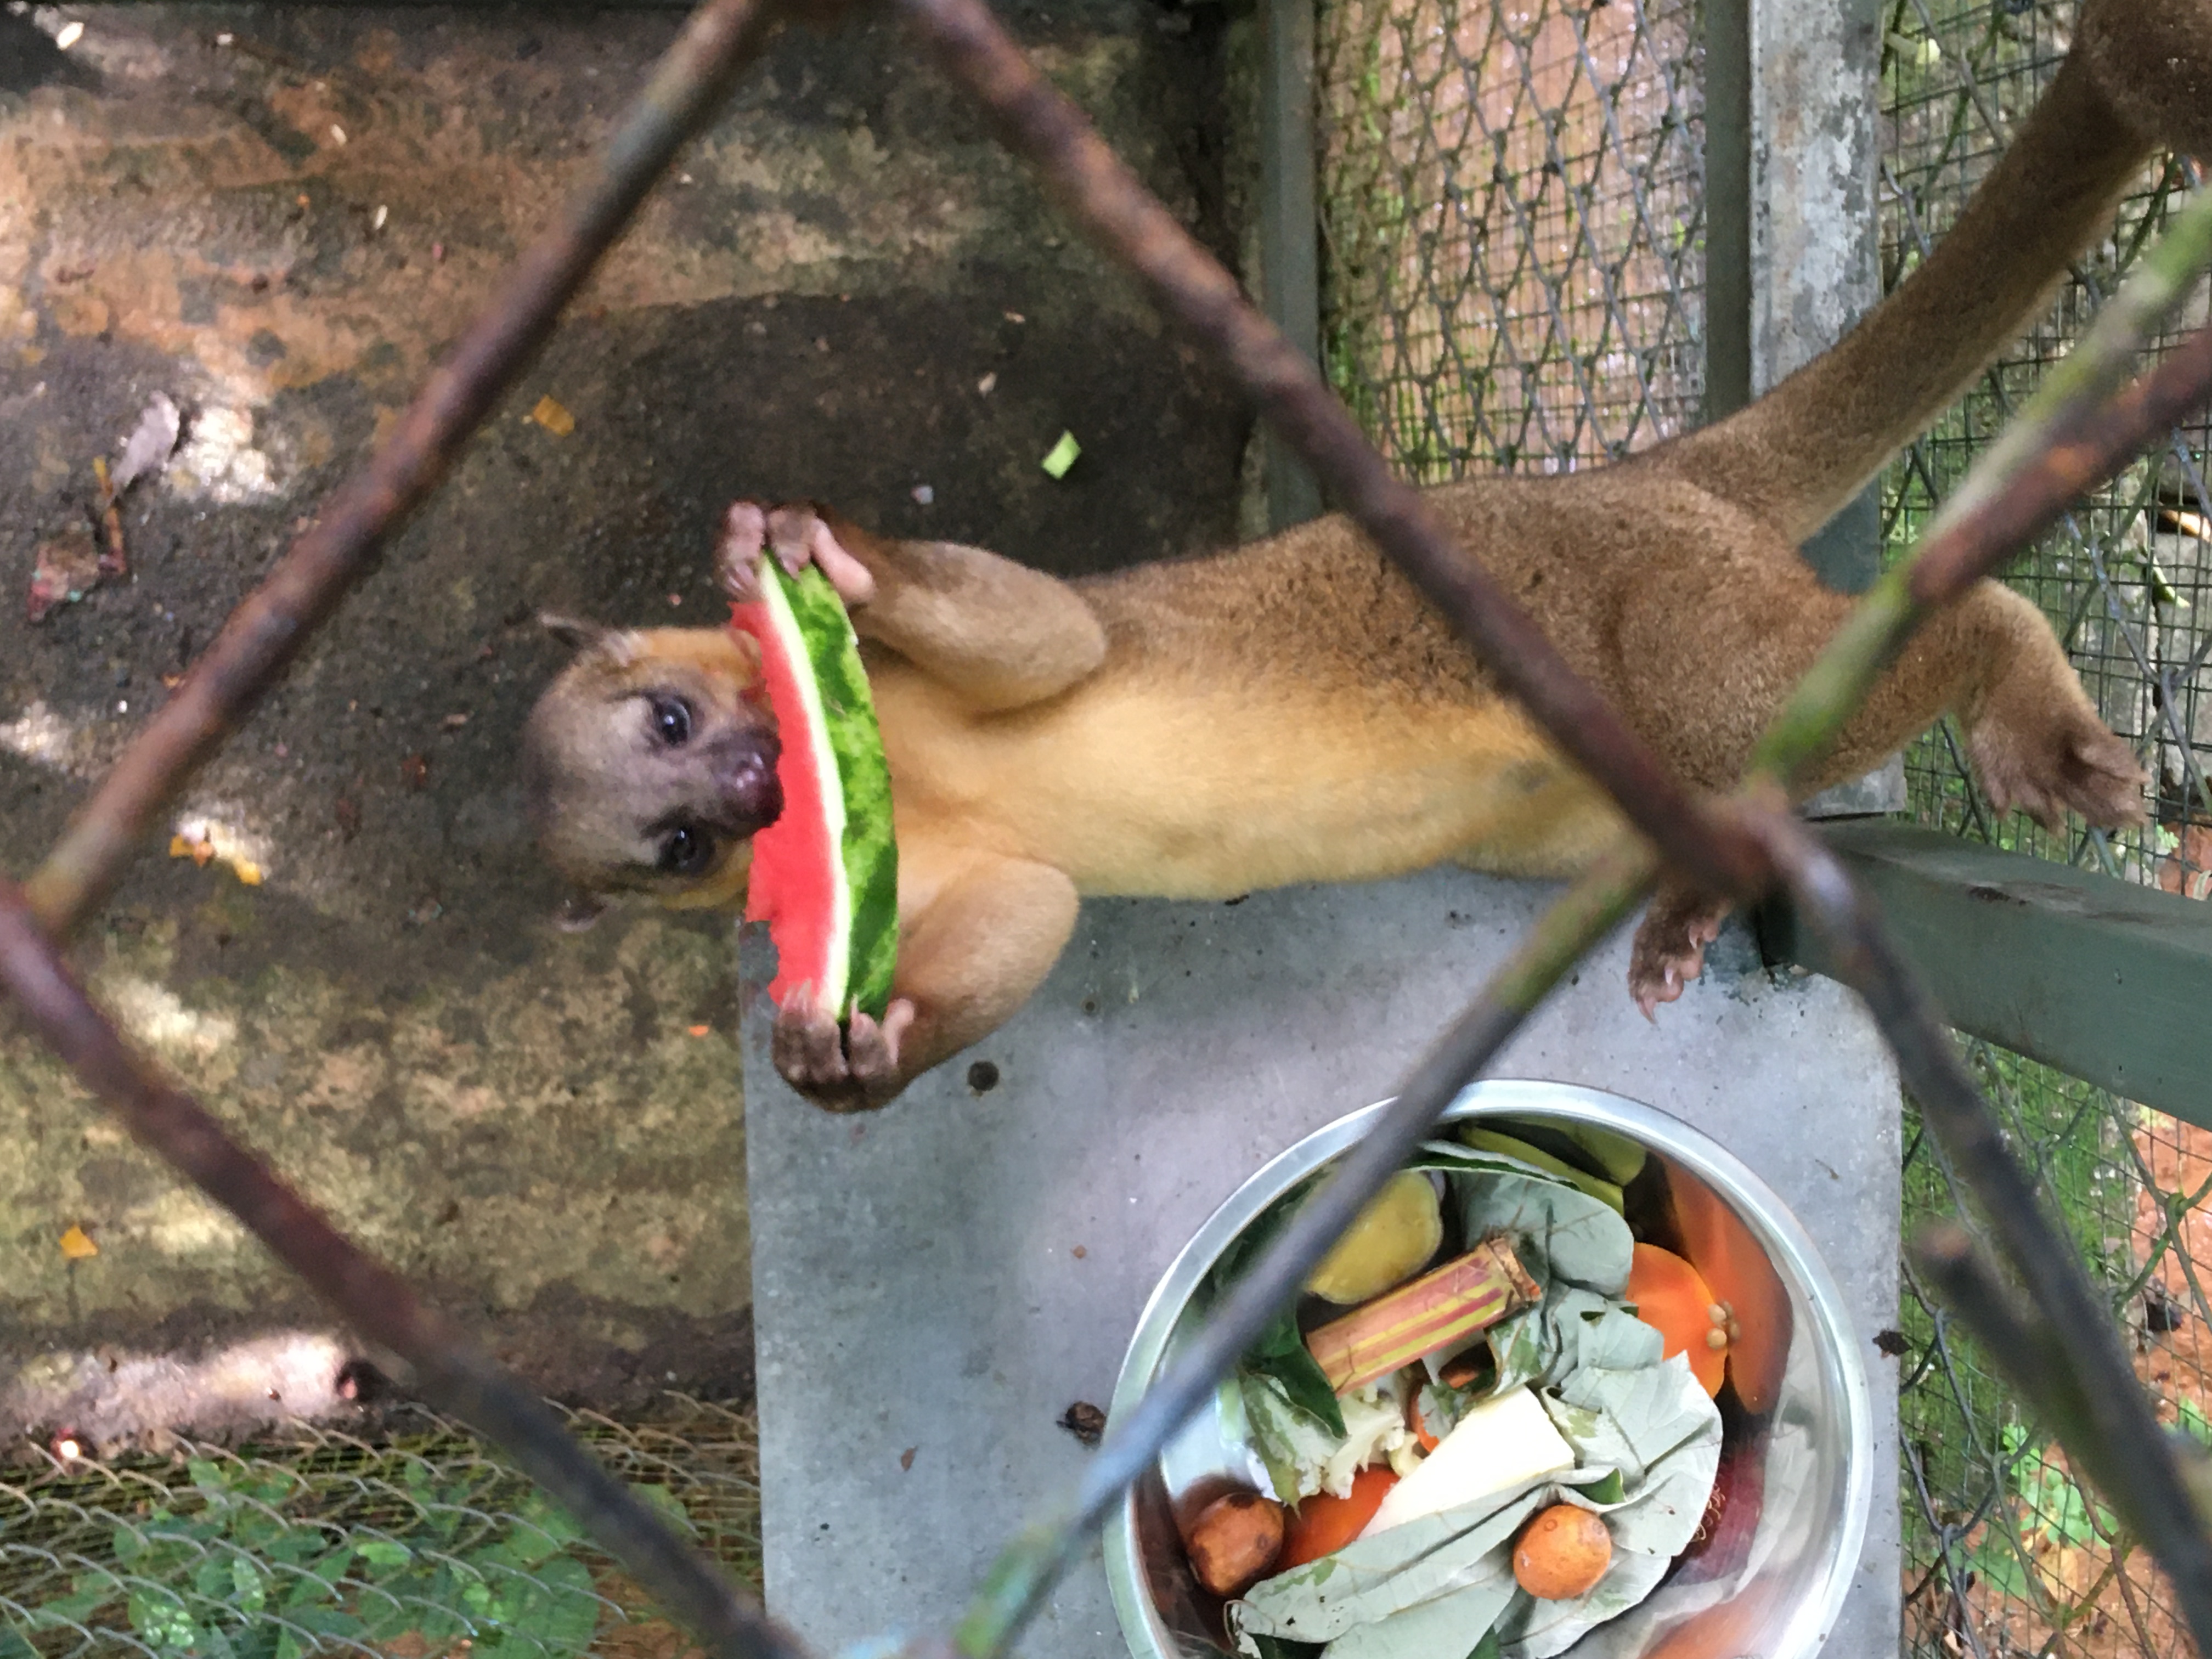 A Kinkajou shown eating a watermelon in an enclosure.